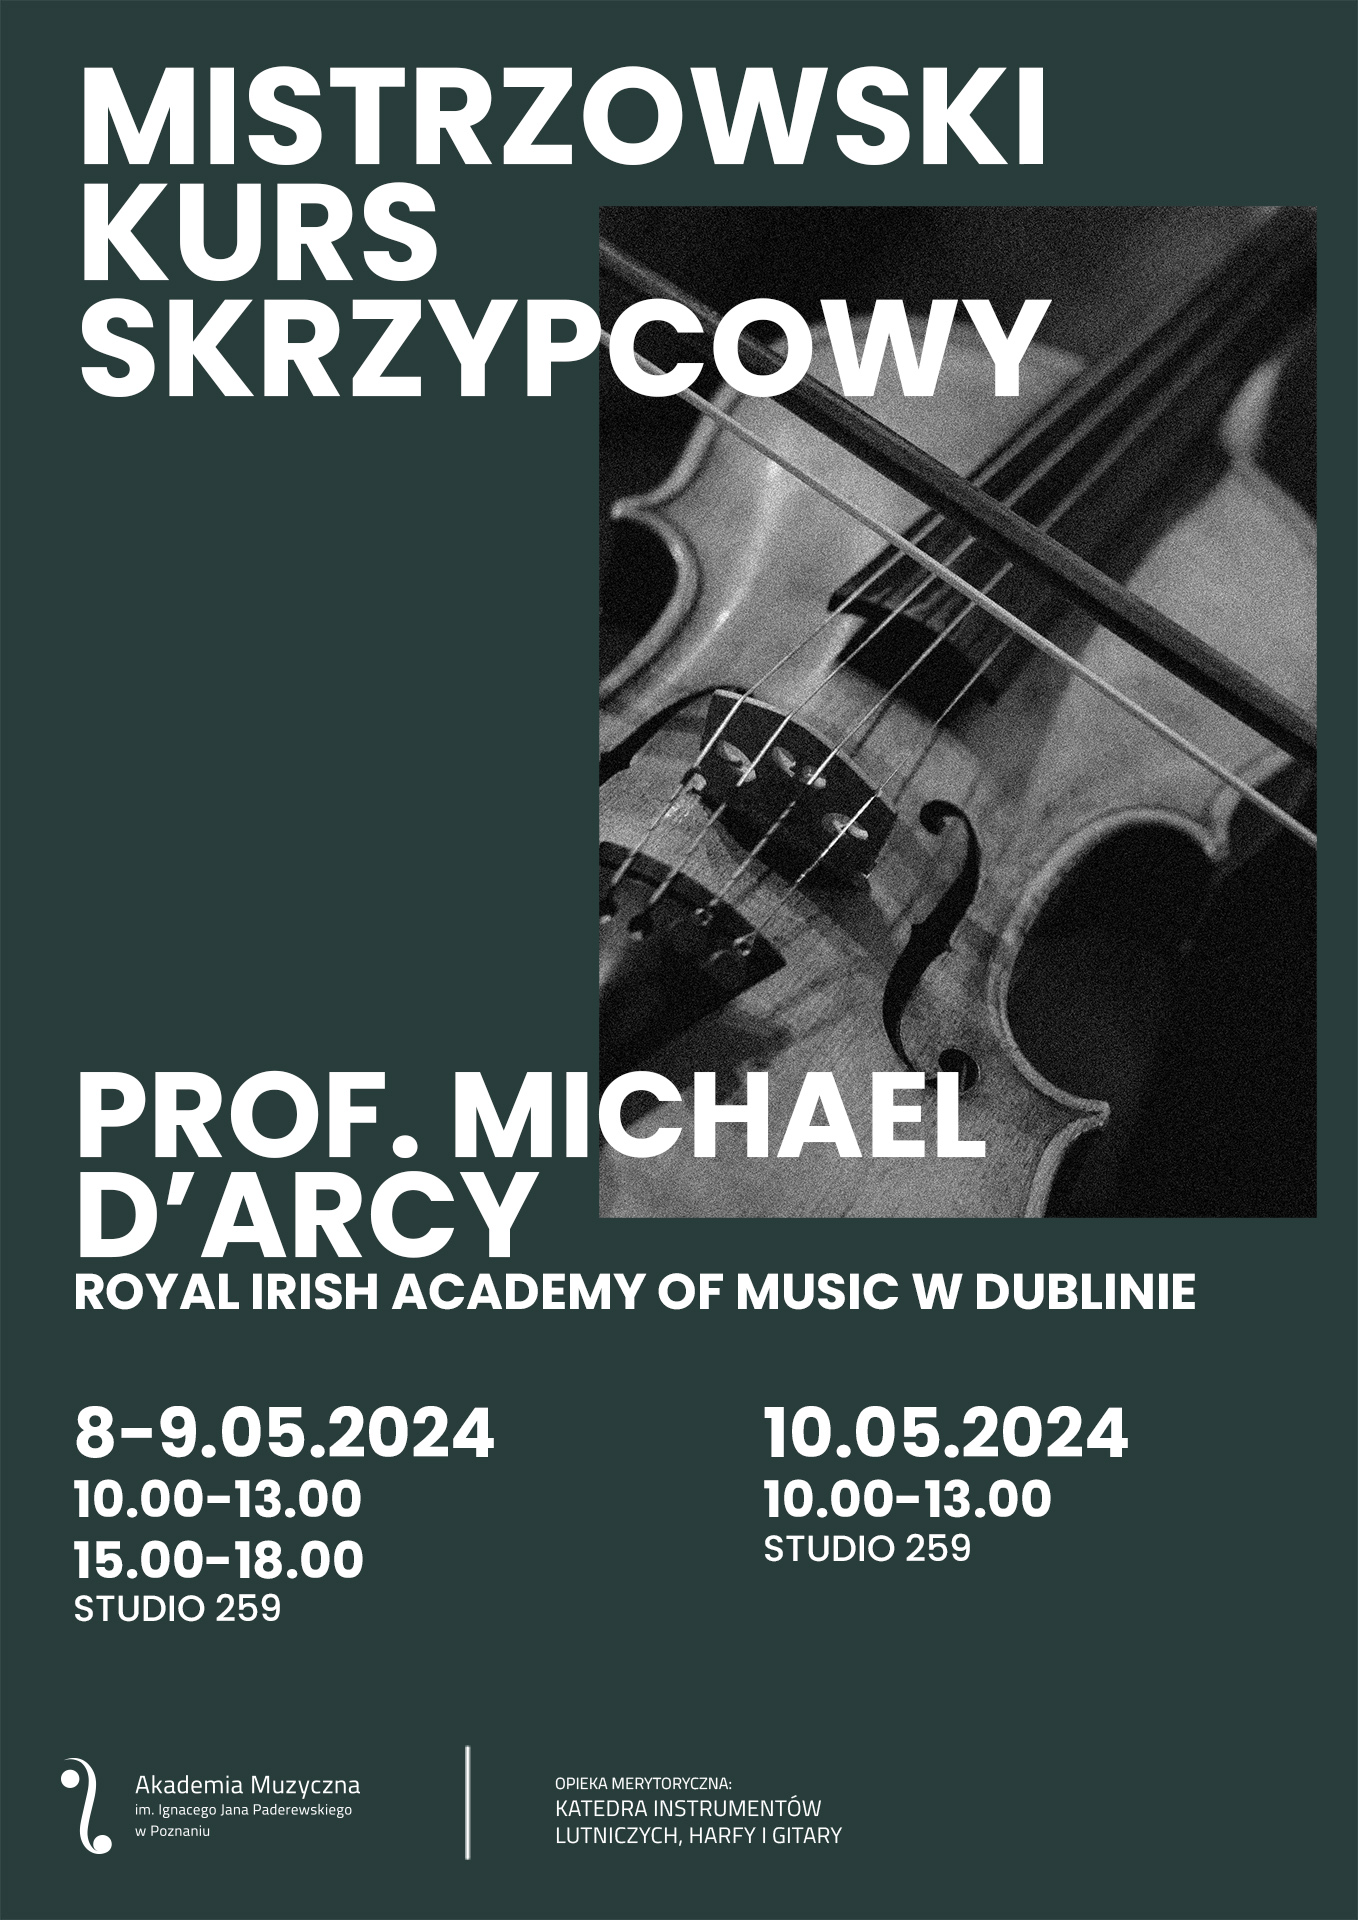 Afisz zawiera informacje na temat kursu skrzypcowego z prof. Michaelem D Arcym